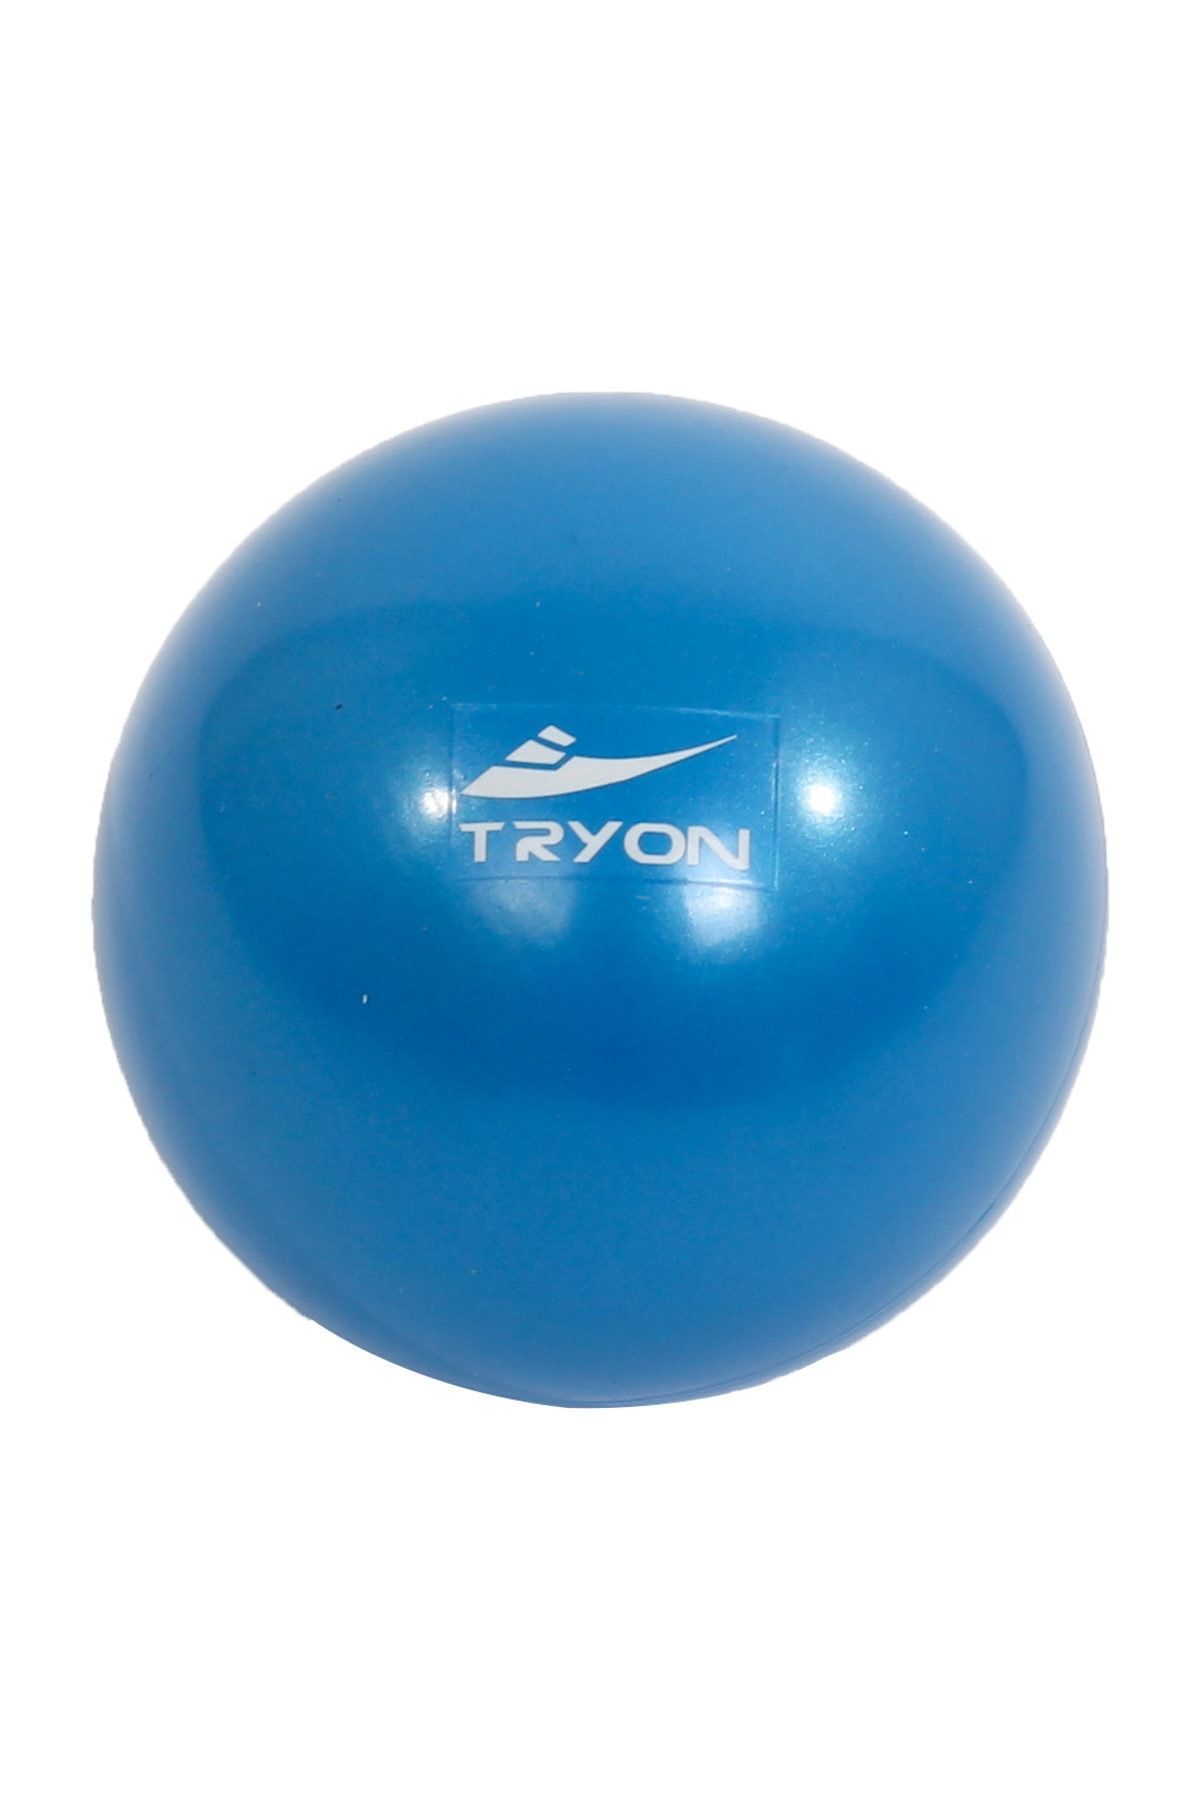 TRYON Cimnastik Topu 0.5Kg